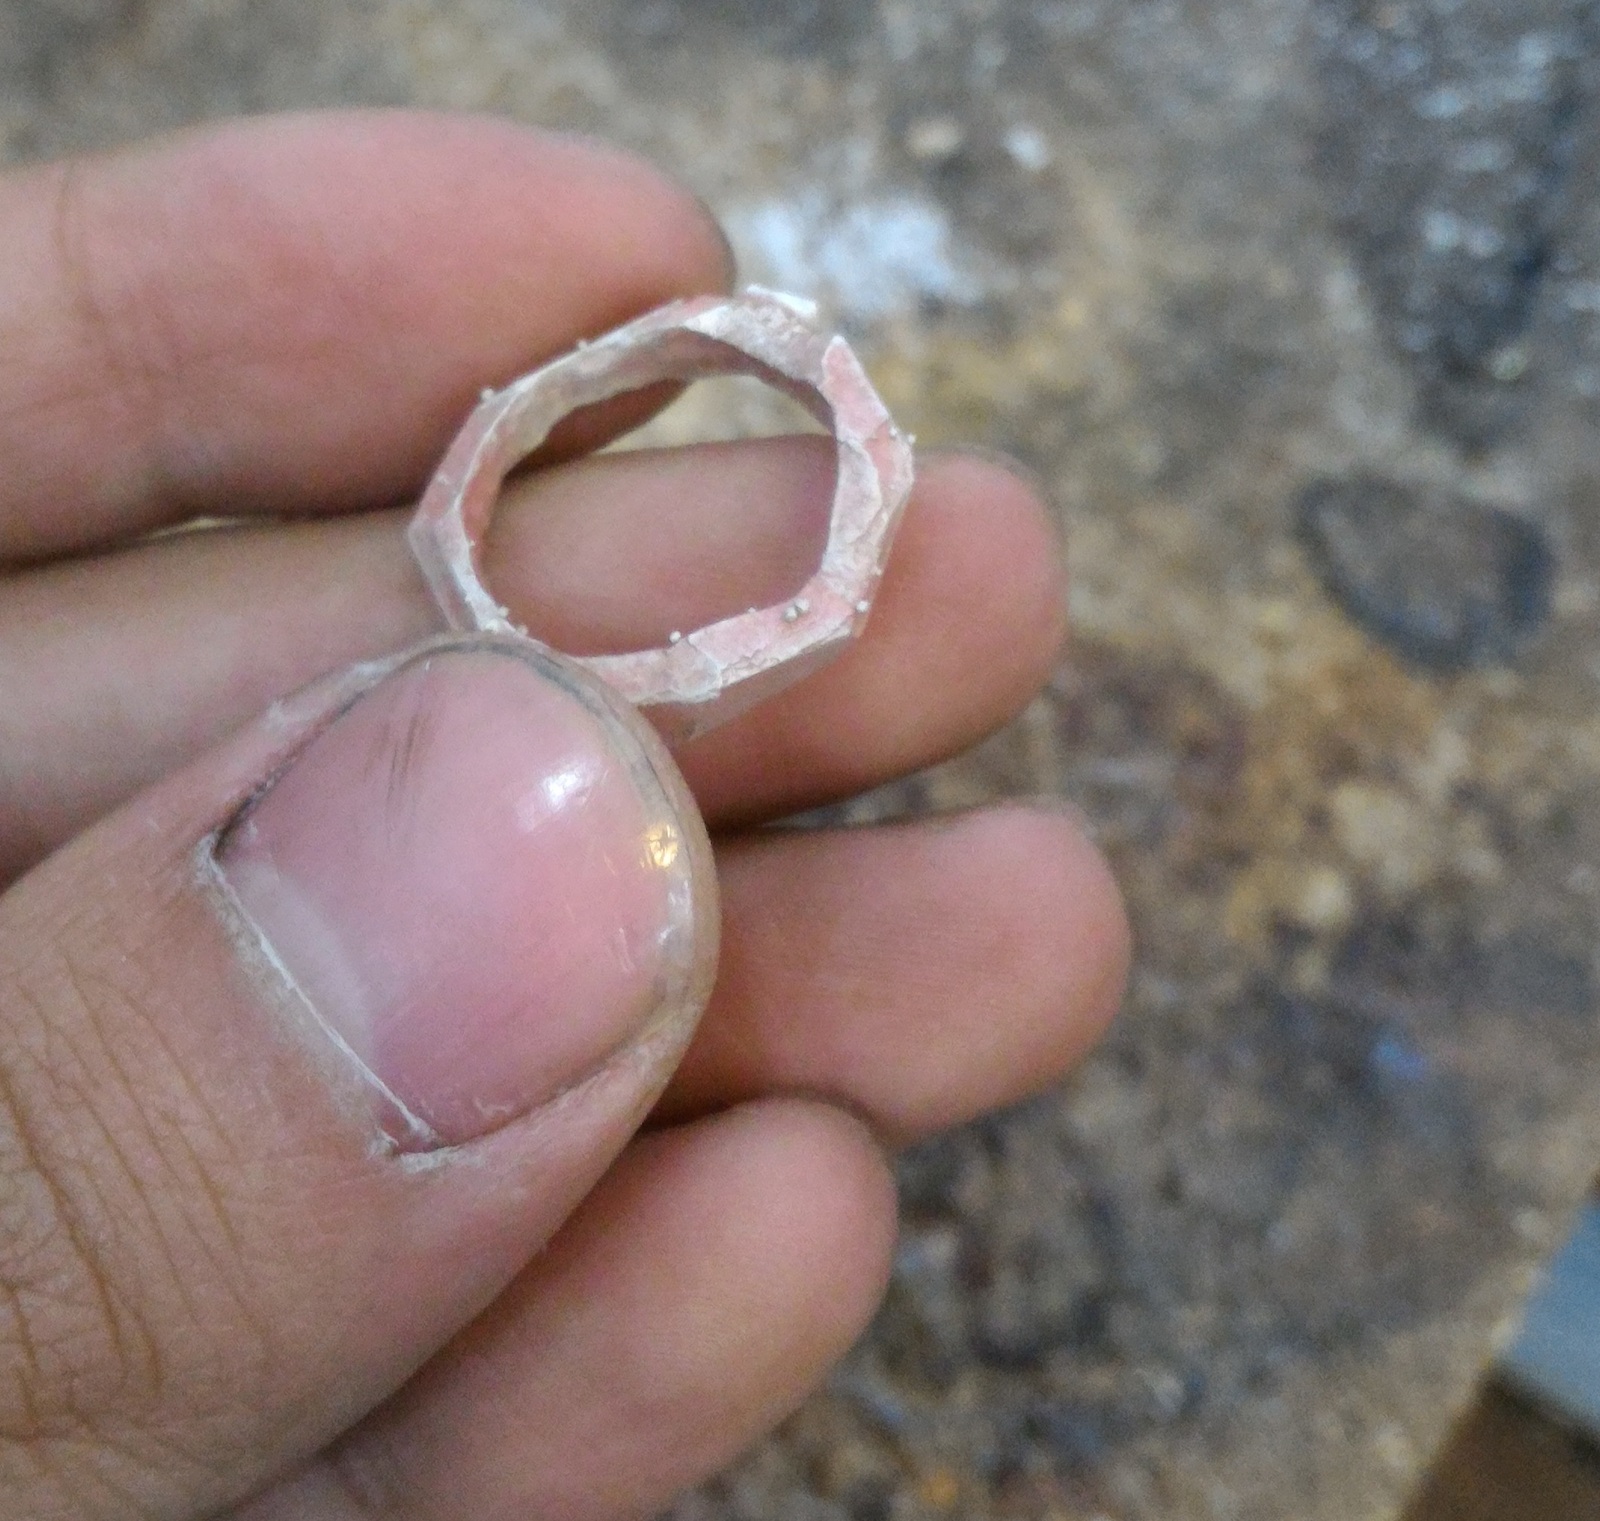 Внимание: стоит ли пытаться сделать кольцо меньше размером в домашних условиях